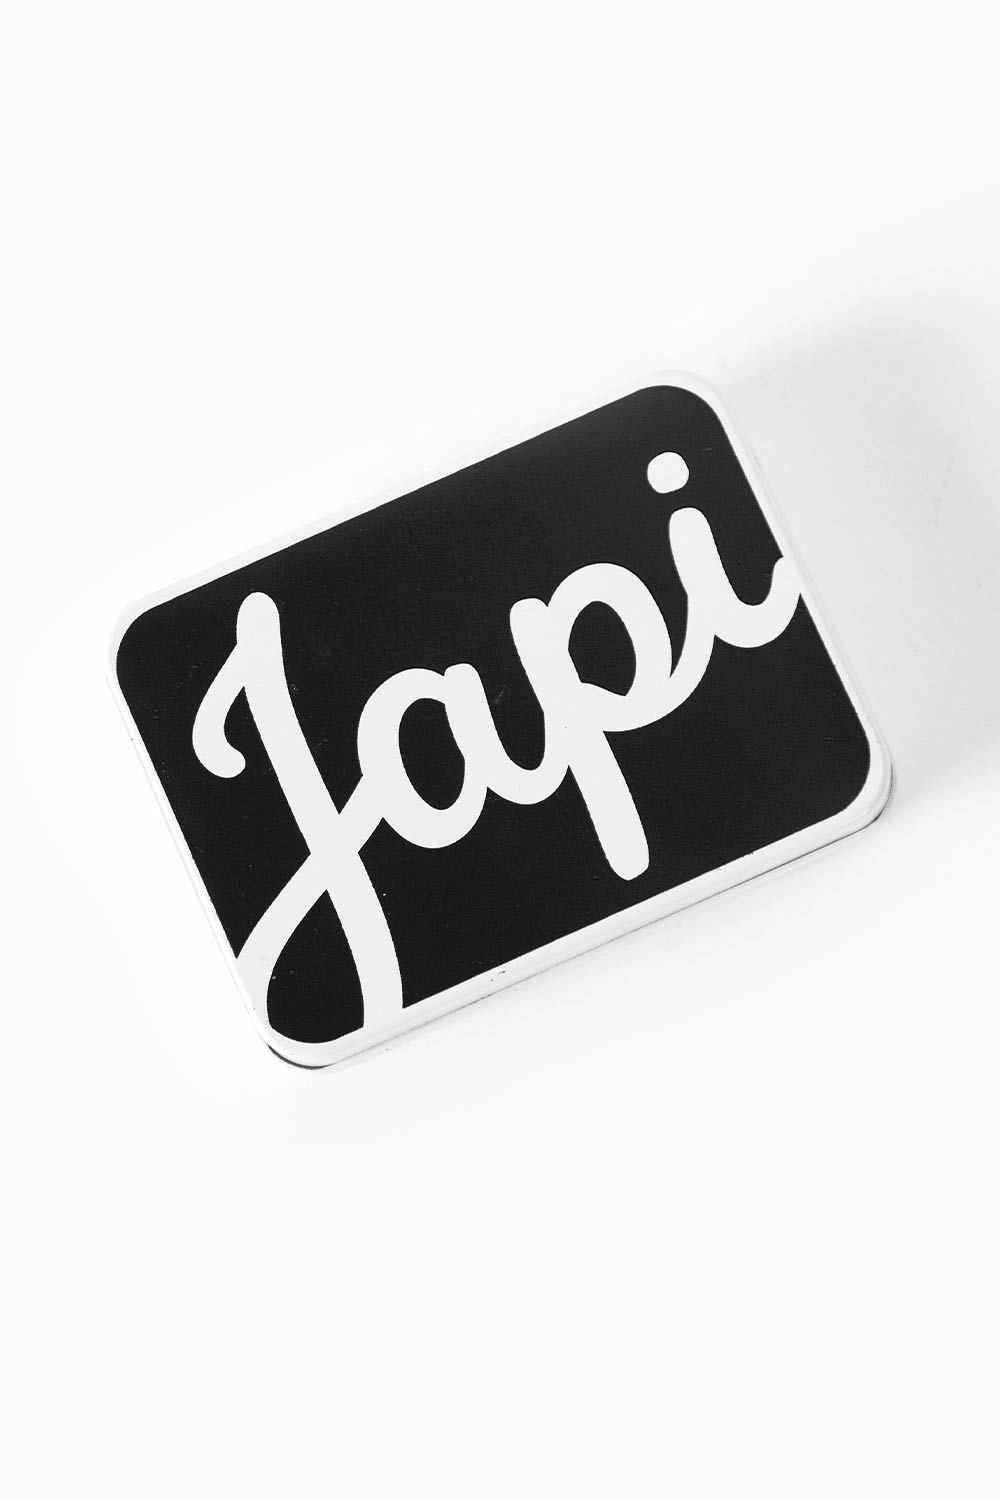 Cajita Metálica | Los Japi Accesorios